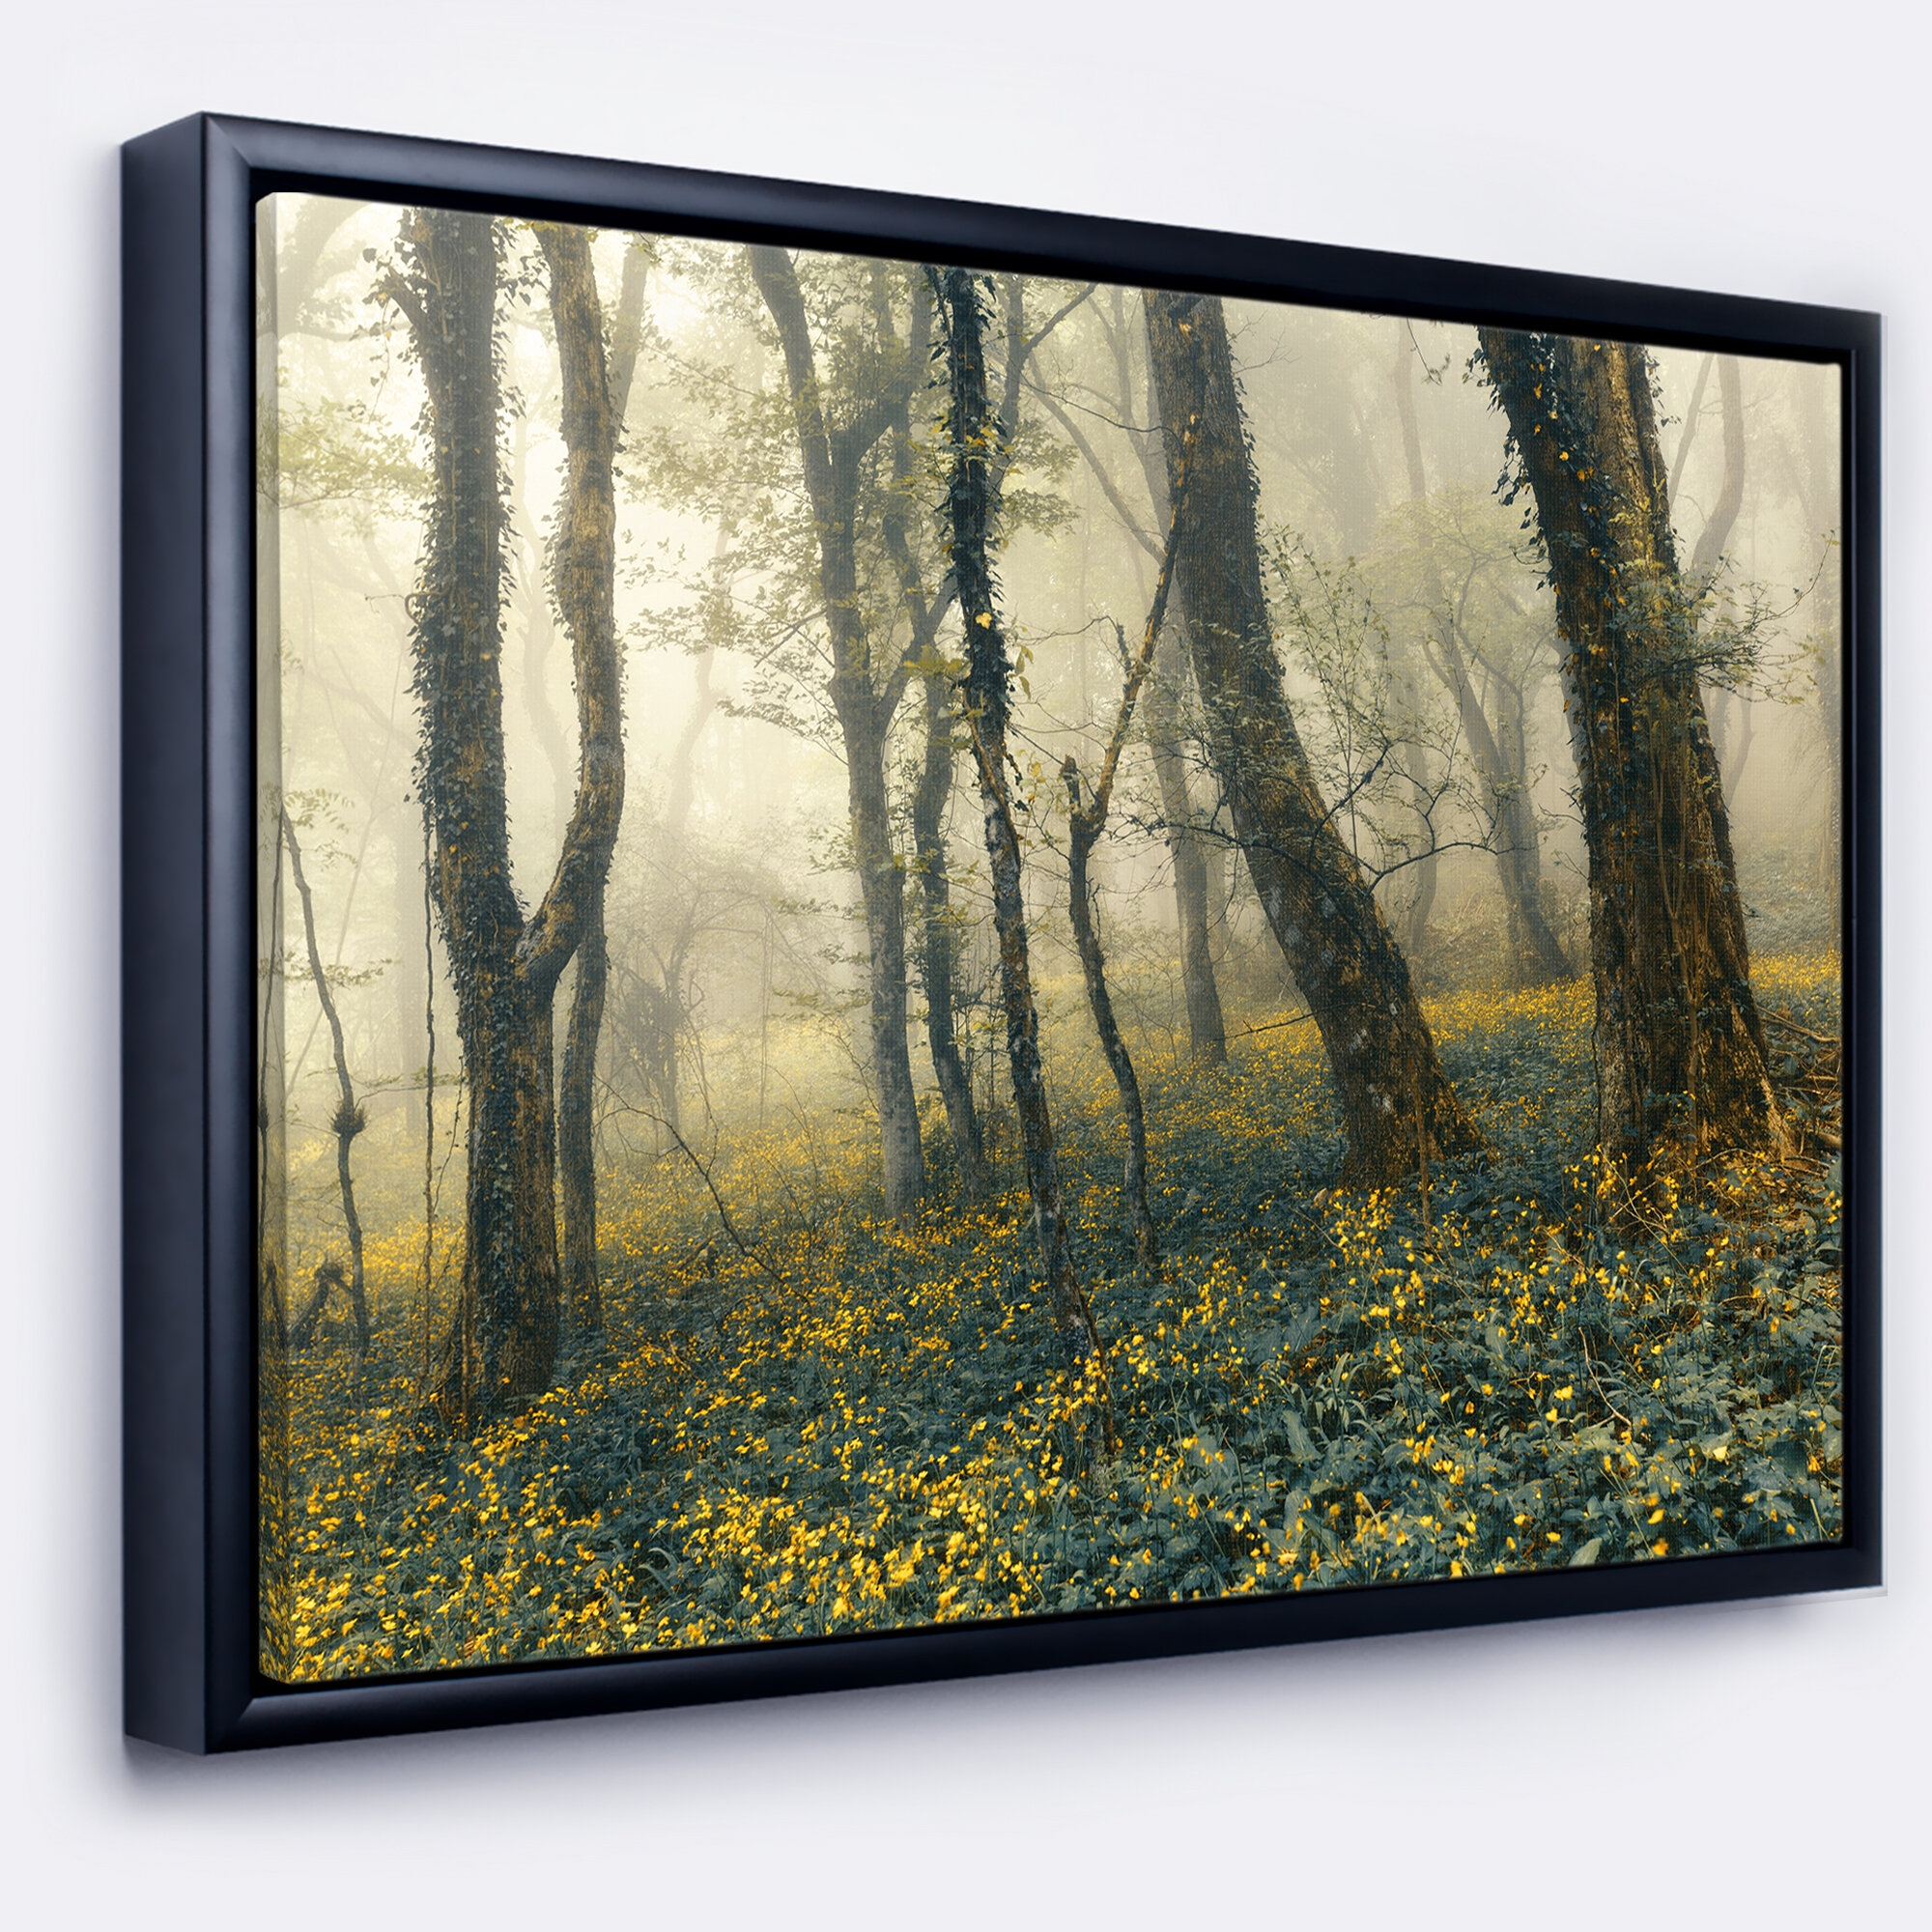 East Urban Home Mysterious Forest In Fog Framed Photograph On Canvas Wayfair